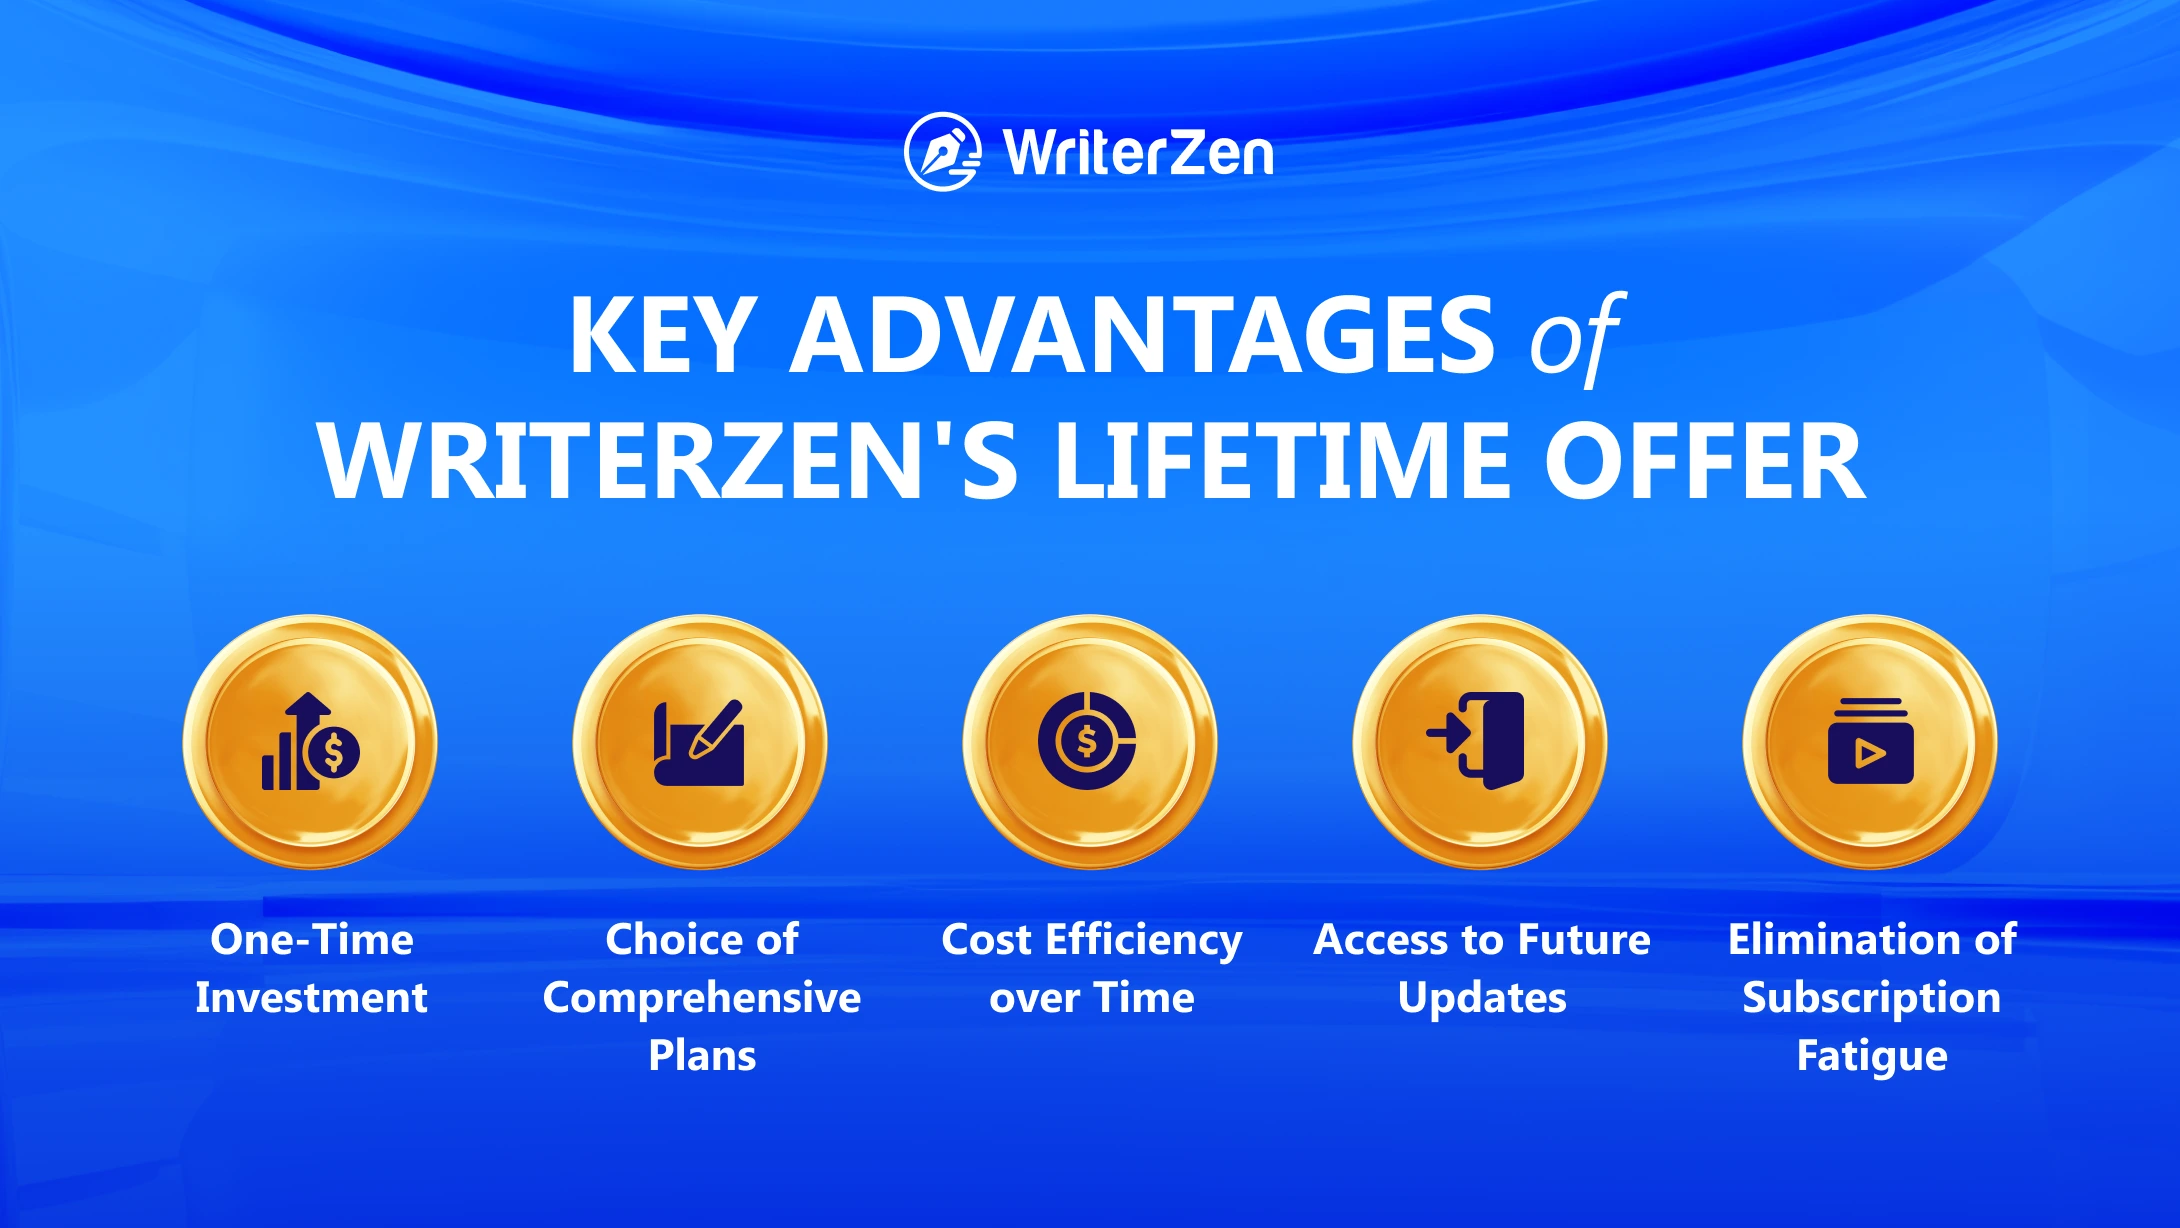 Key advantages of WriterZen lifetime offer